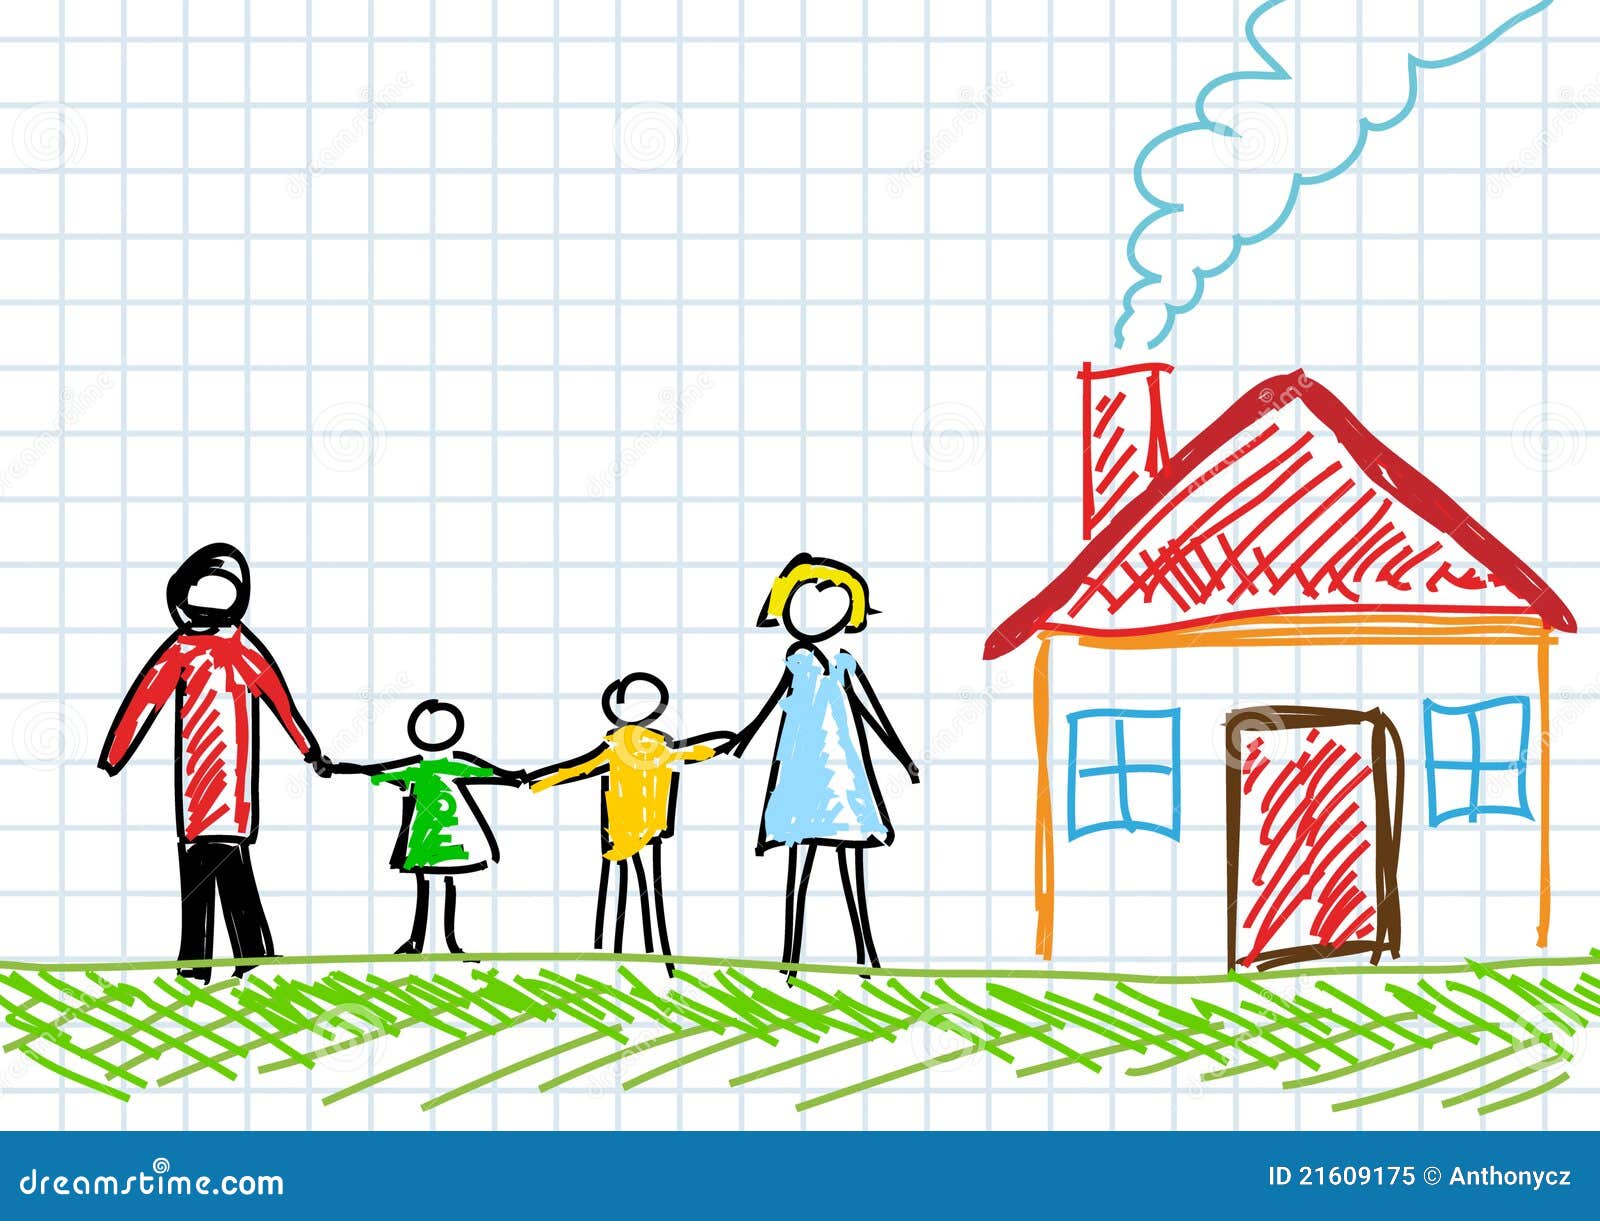 Нарисовать будущую семью дом и домашнее хозяйство. Рисунок домашнее хозяйство в семье. Будущая семья дом и домашнее хозяйство. Рисунок будущую семью дом и домашнее хозяйство. Семья будущего рисунок.